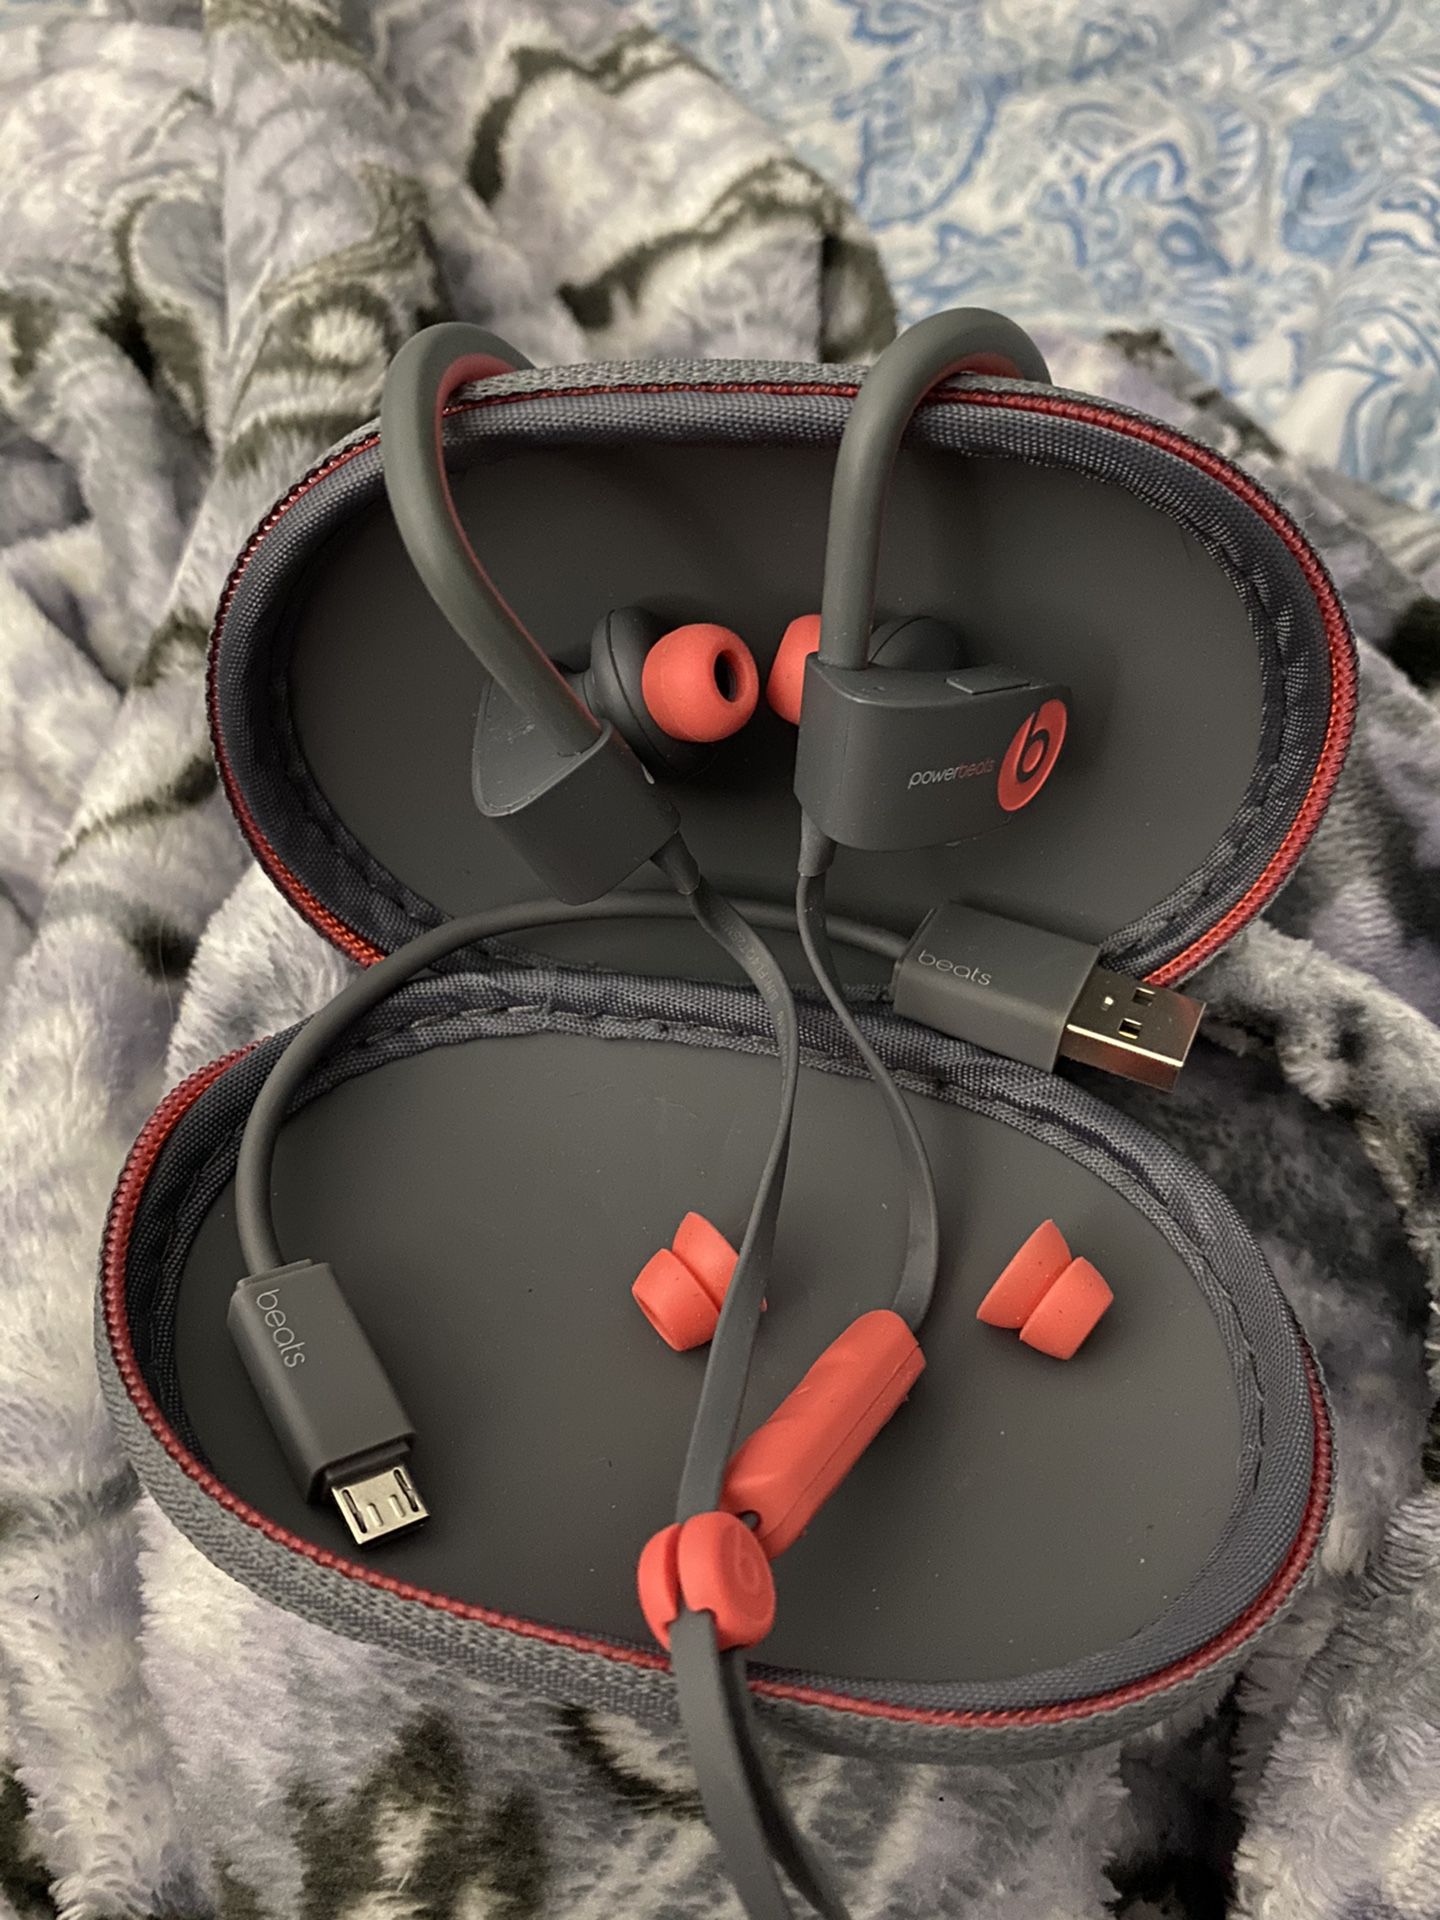 PowerBeats wireless earbuds